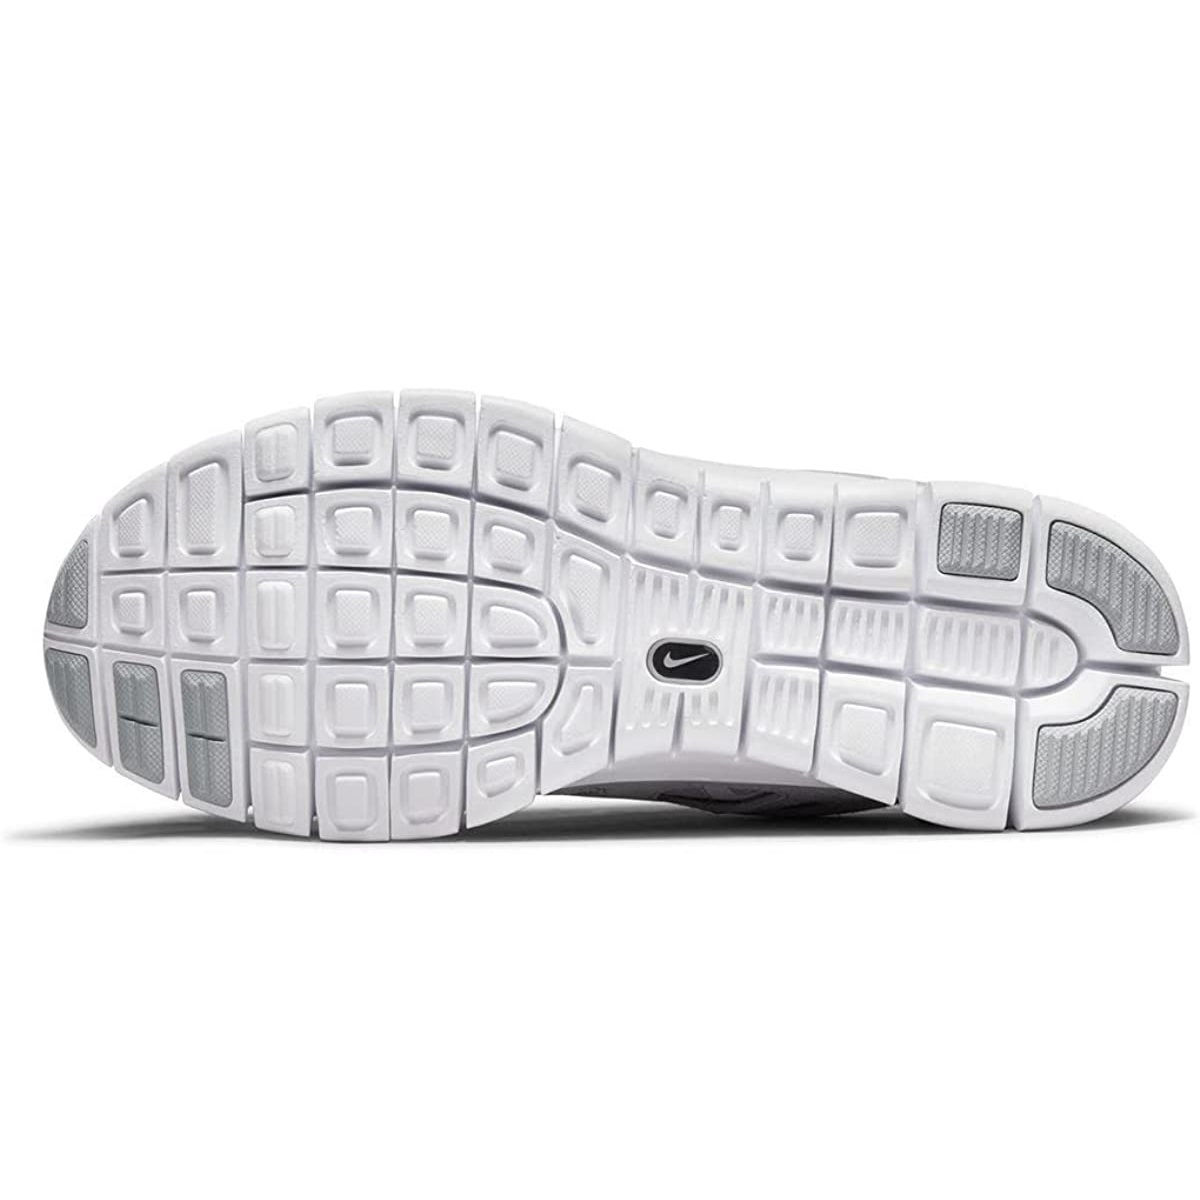 # Nike free Ran 2 gray / white new goods 27.0cm US9 NIKE FREE RN 2 free Ran running shoes 537732-014